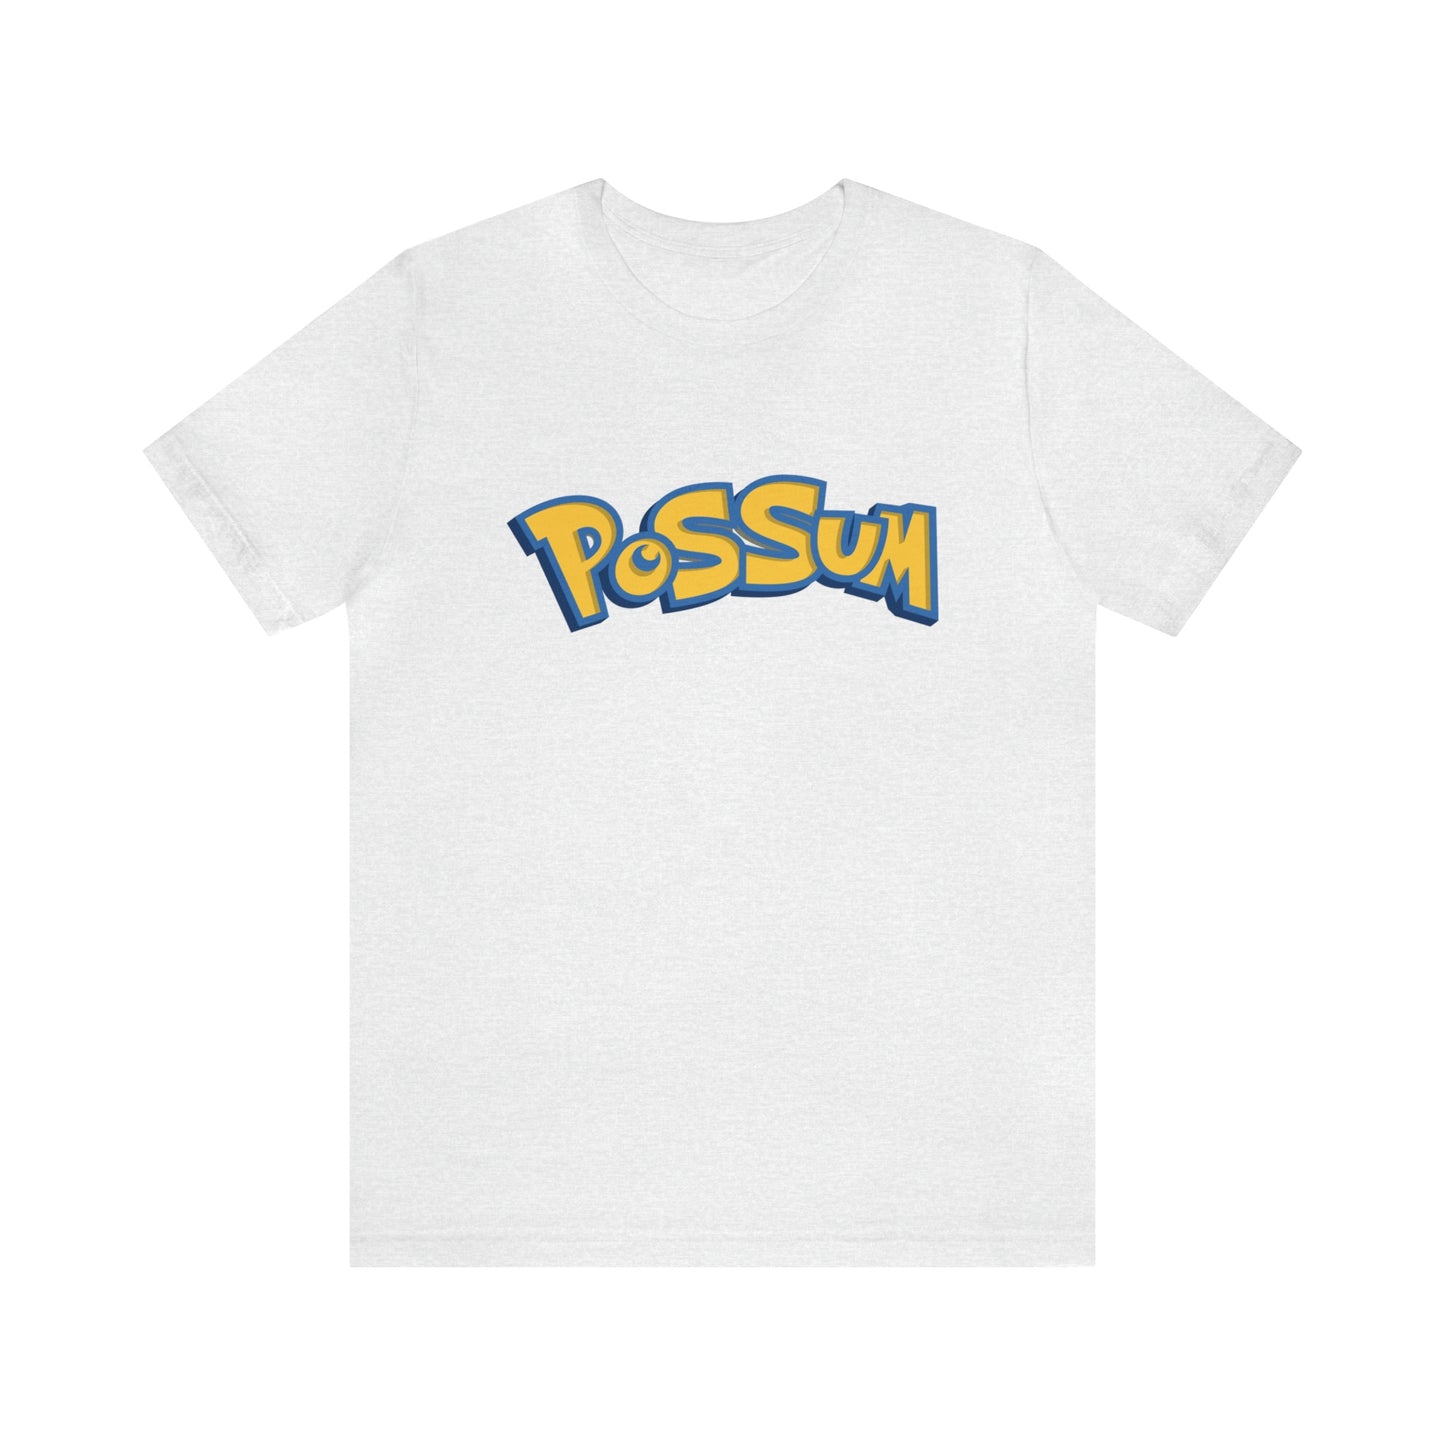 Possum T-Shirt